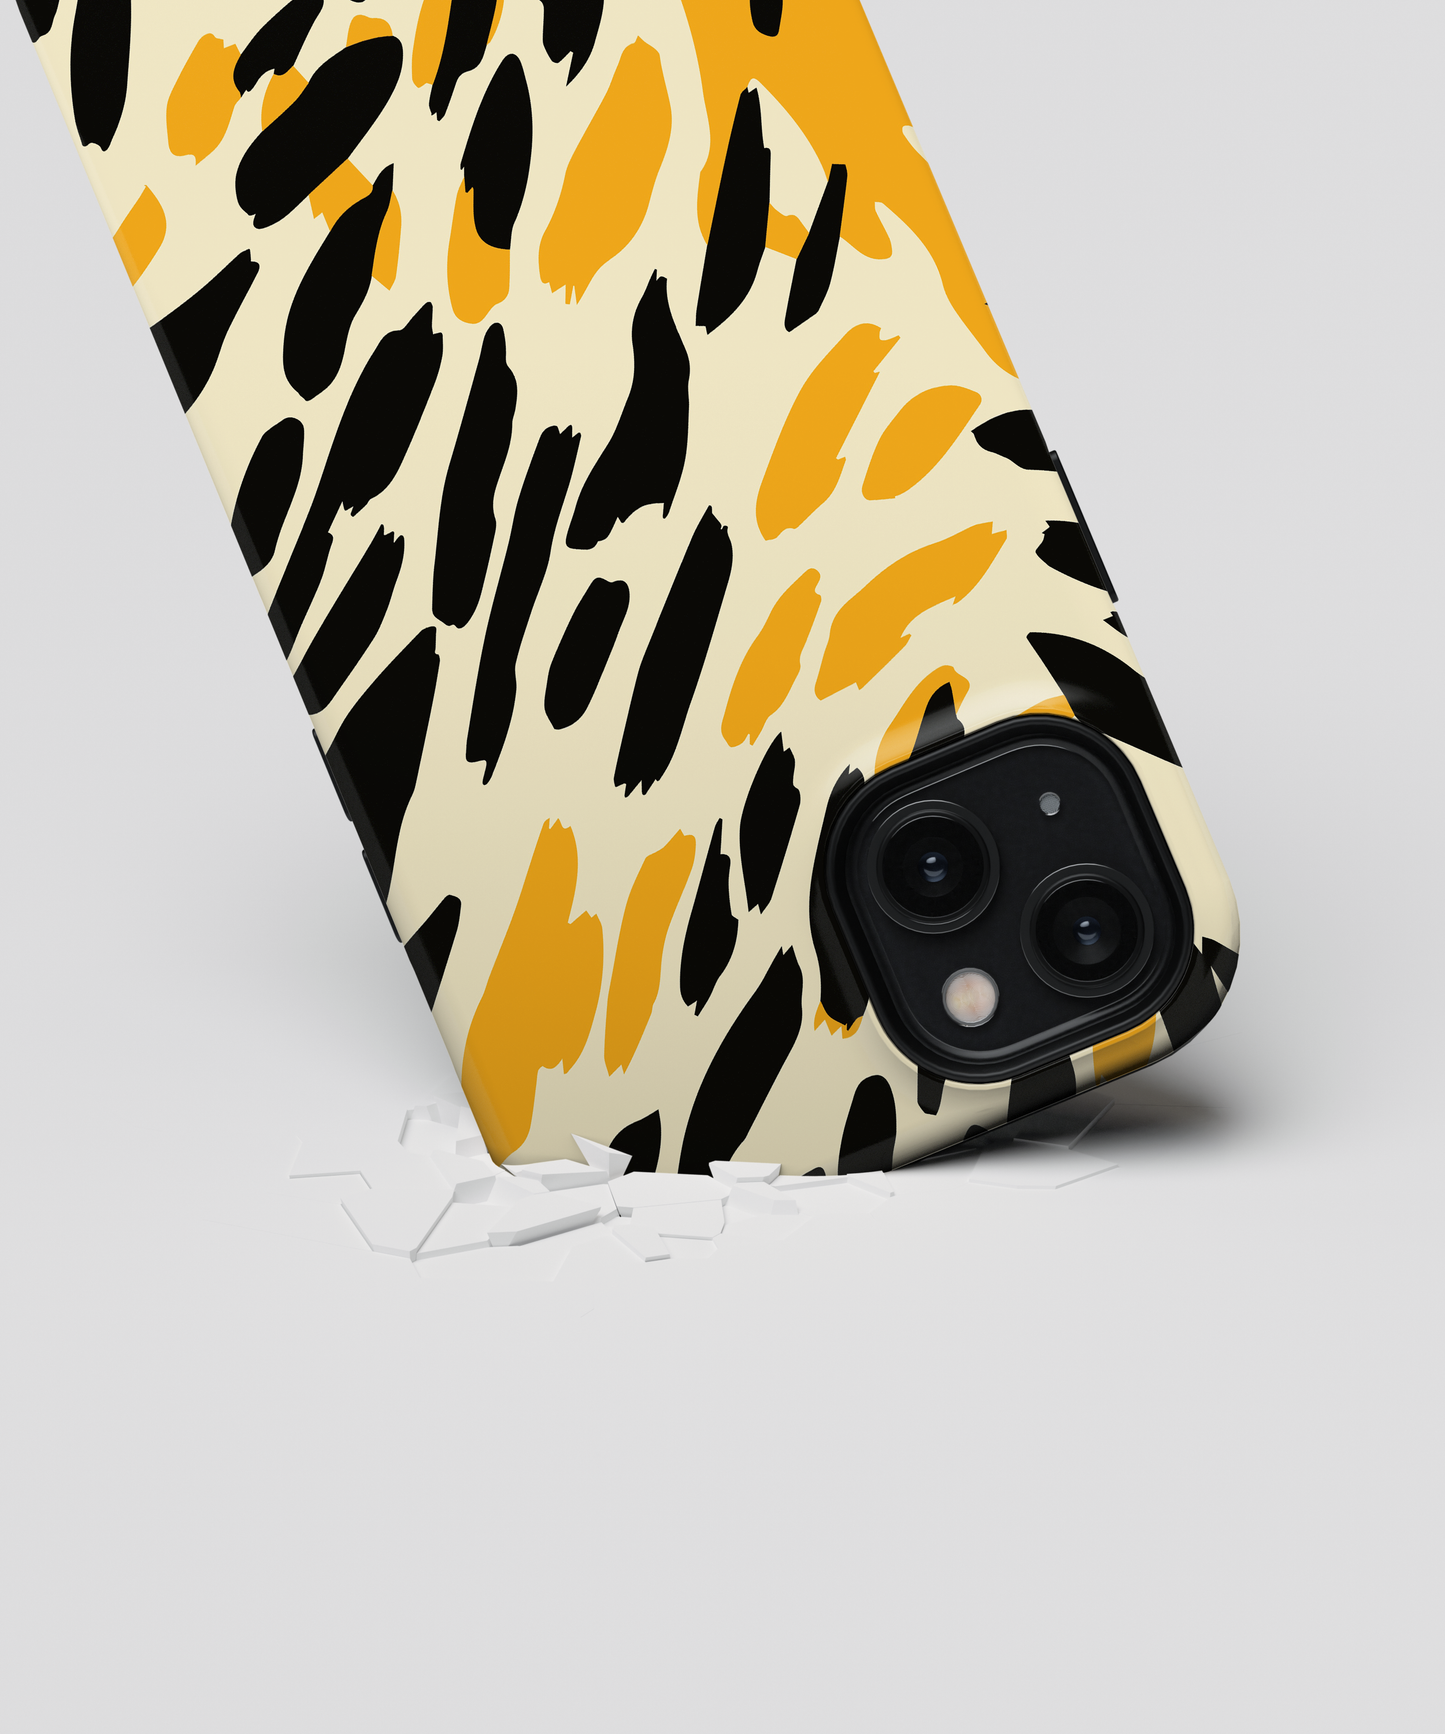 Cheetah - Samsung Galaxy S20 phone case